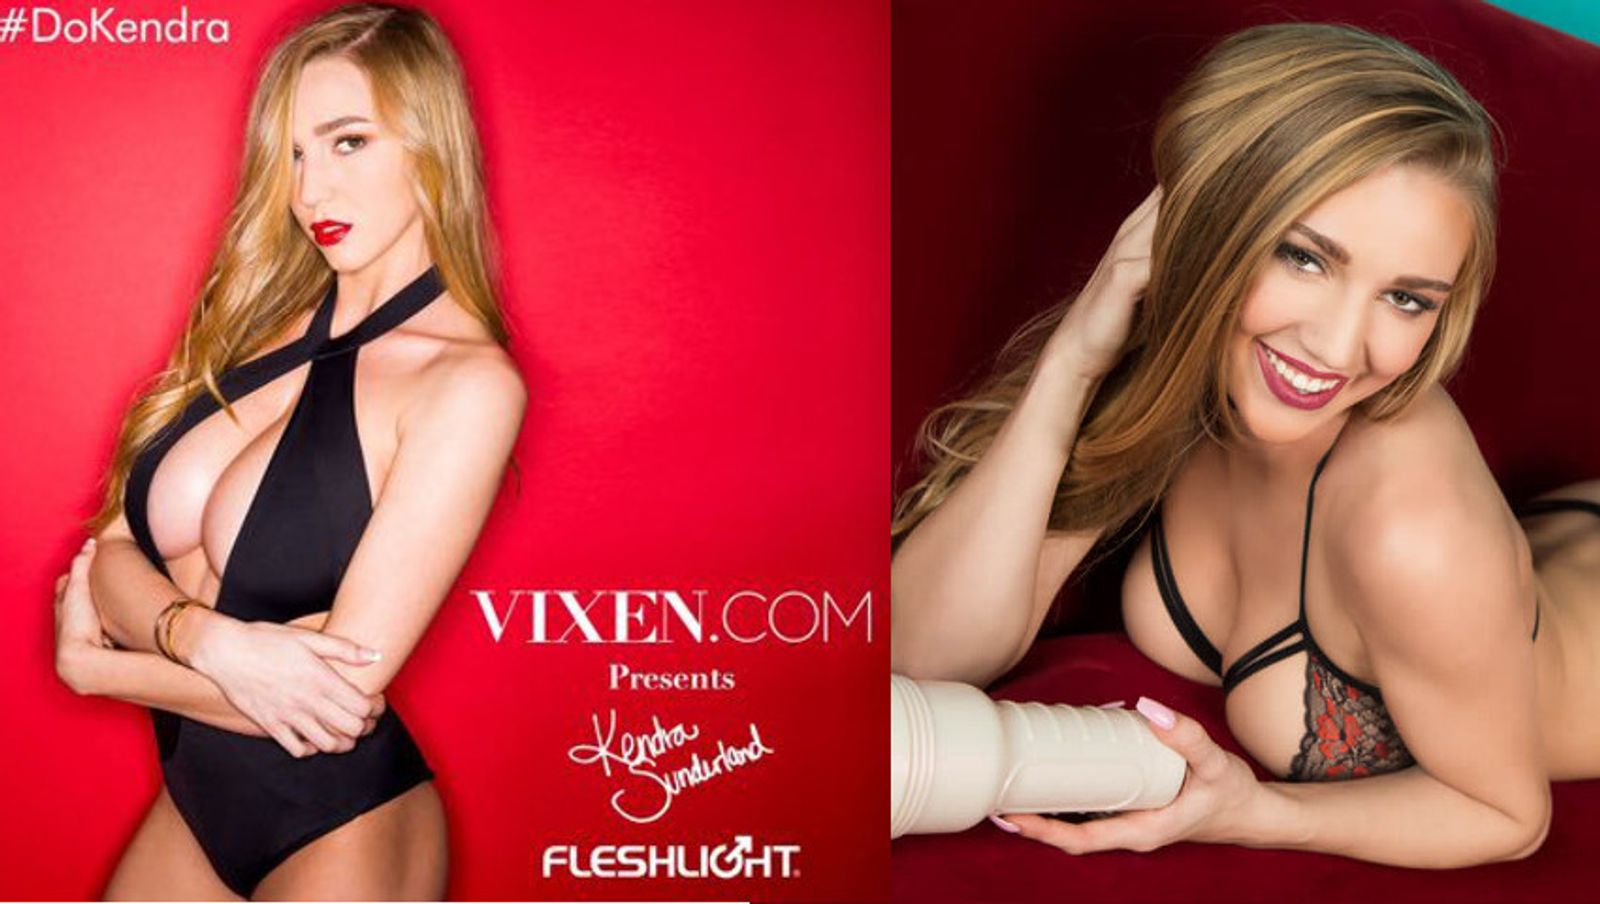 Kendra Shows Her Talent - Kendra Sunderland Named Fleshlight Girl | AVN